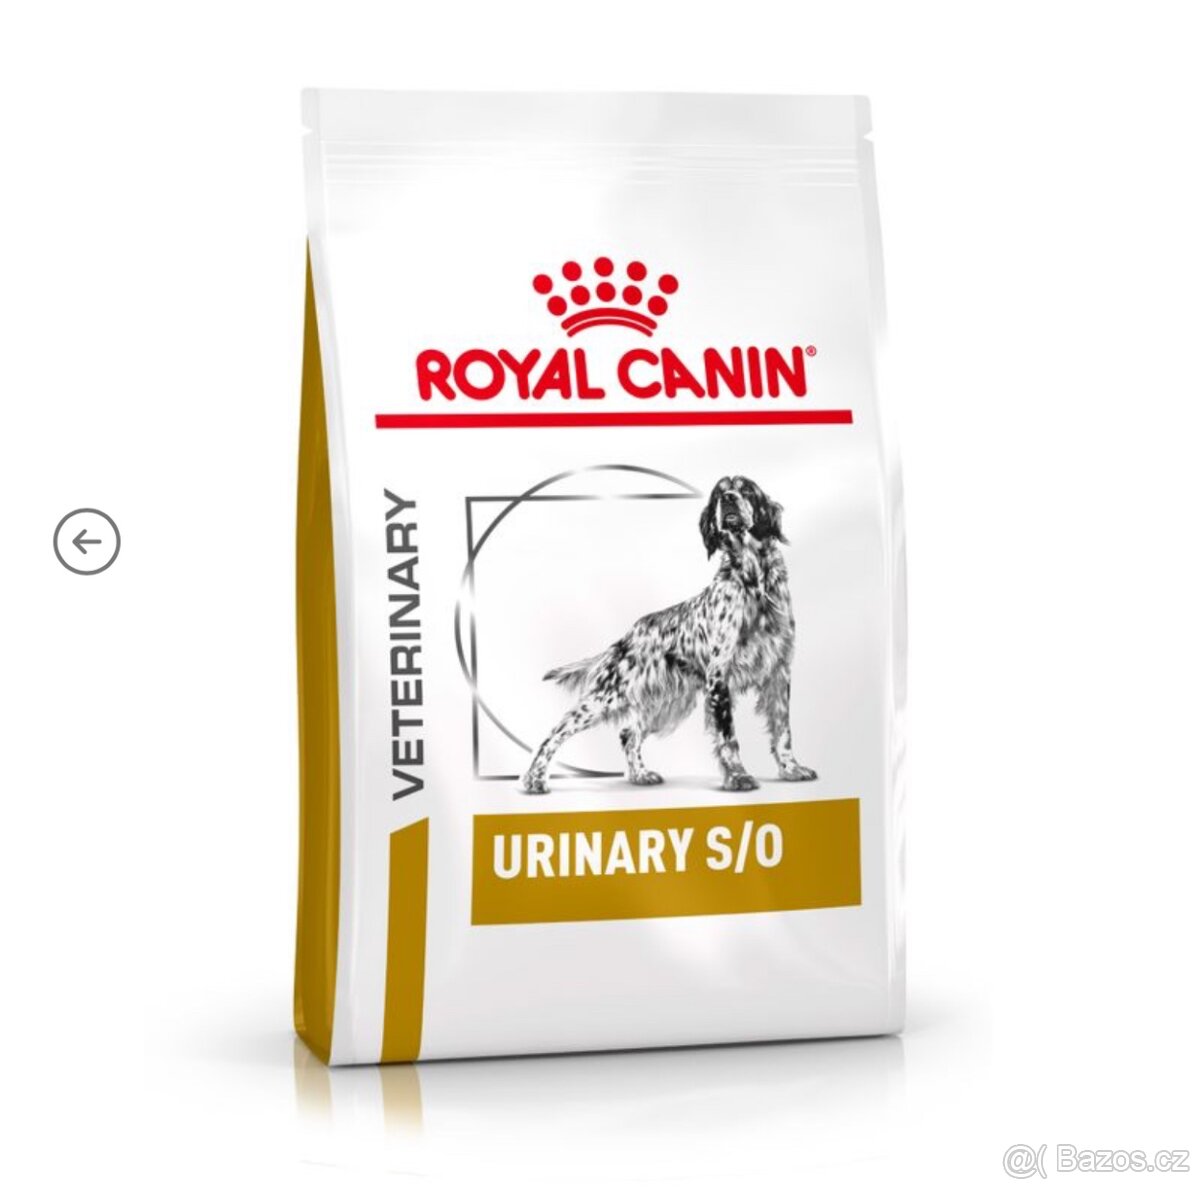 Royal Canin veterinary urinary s/o